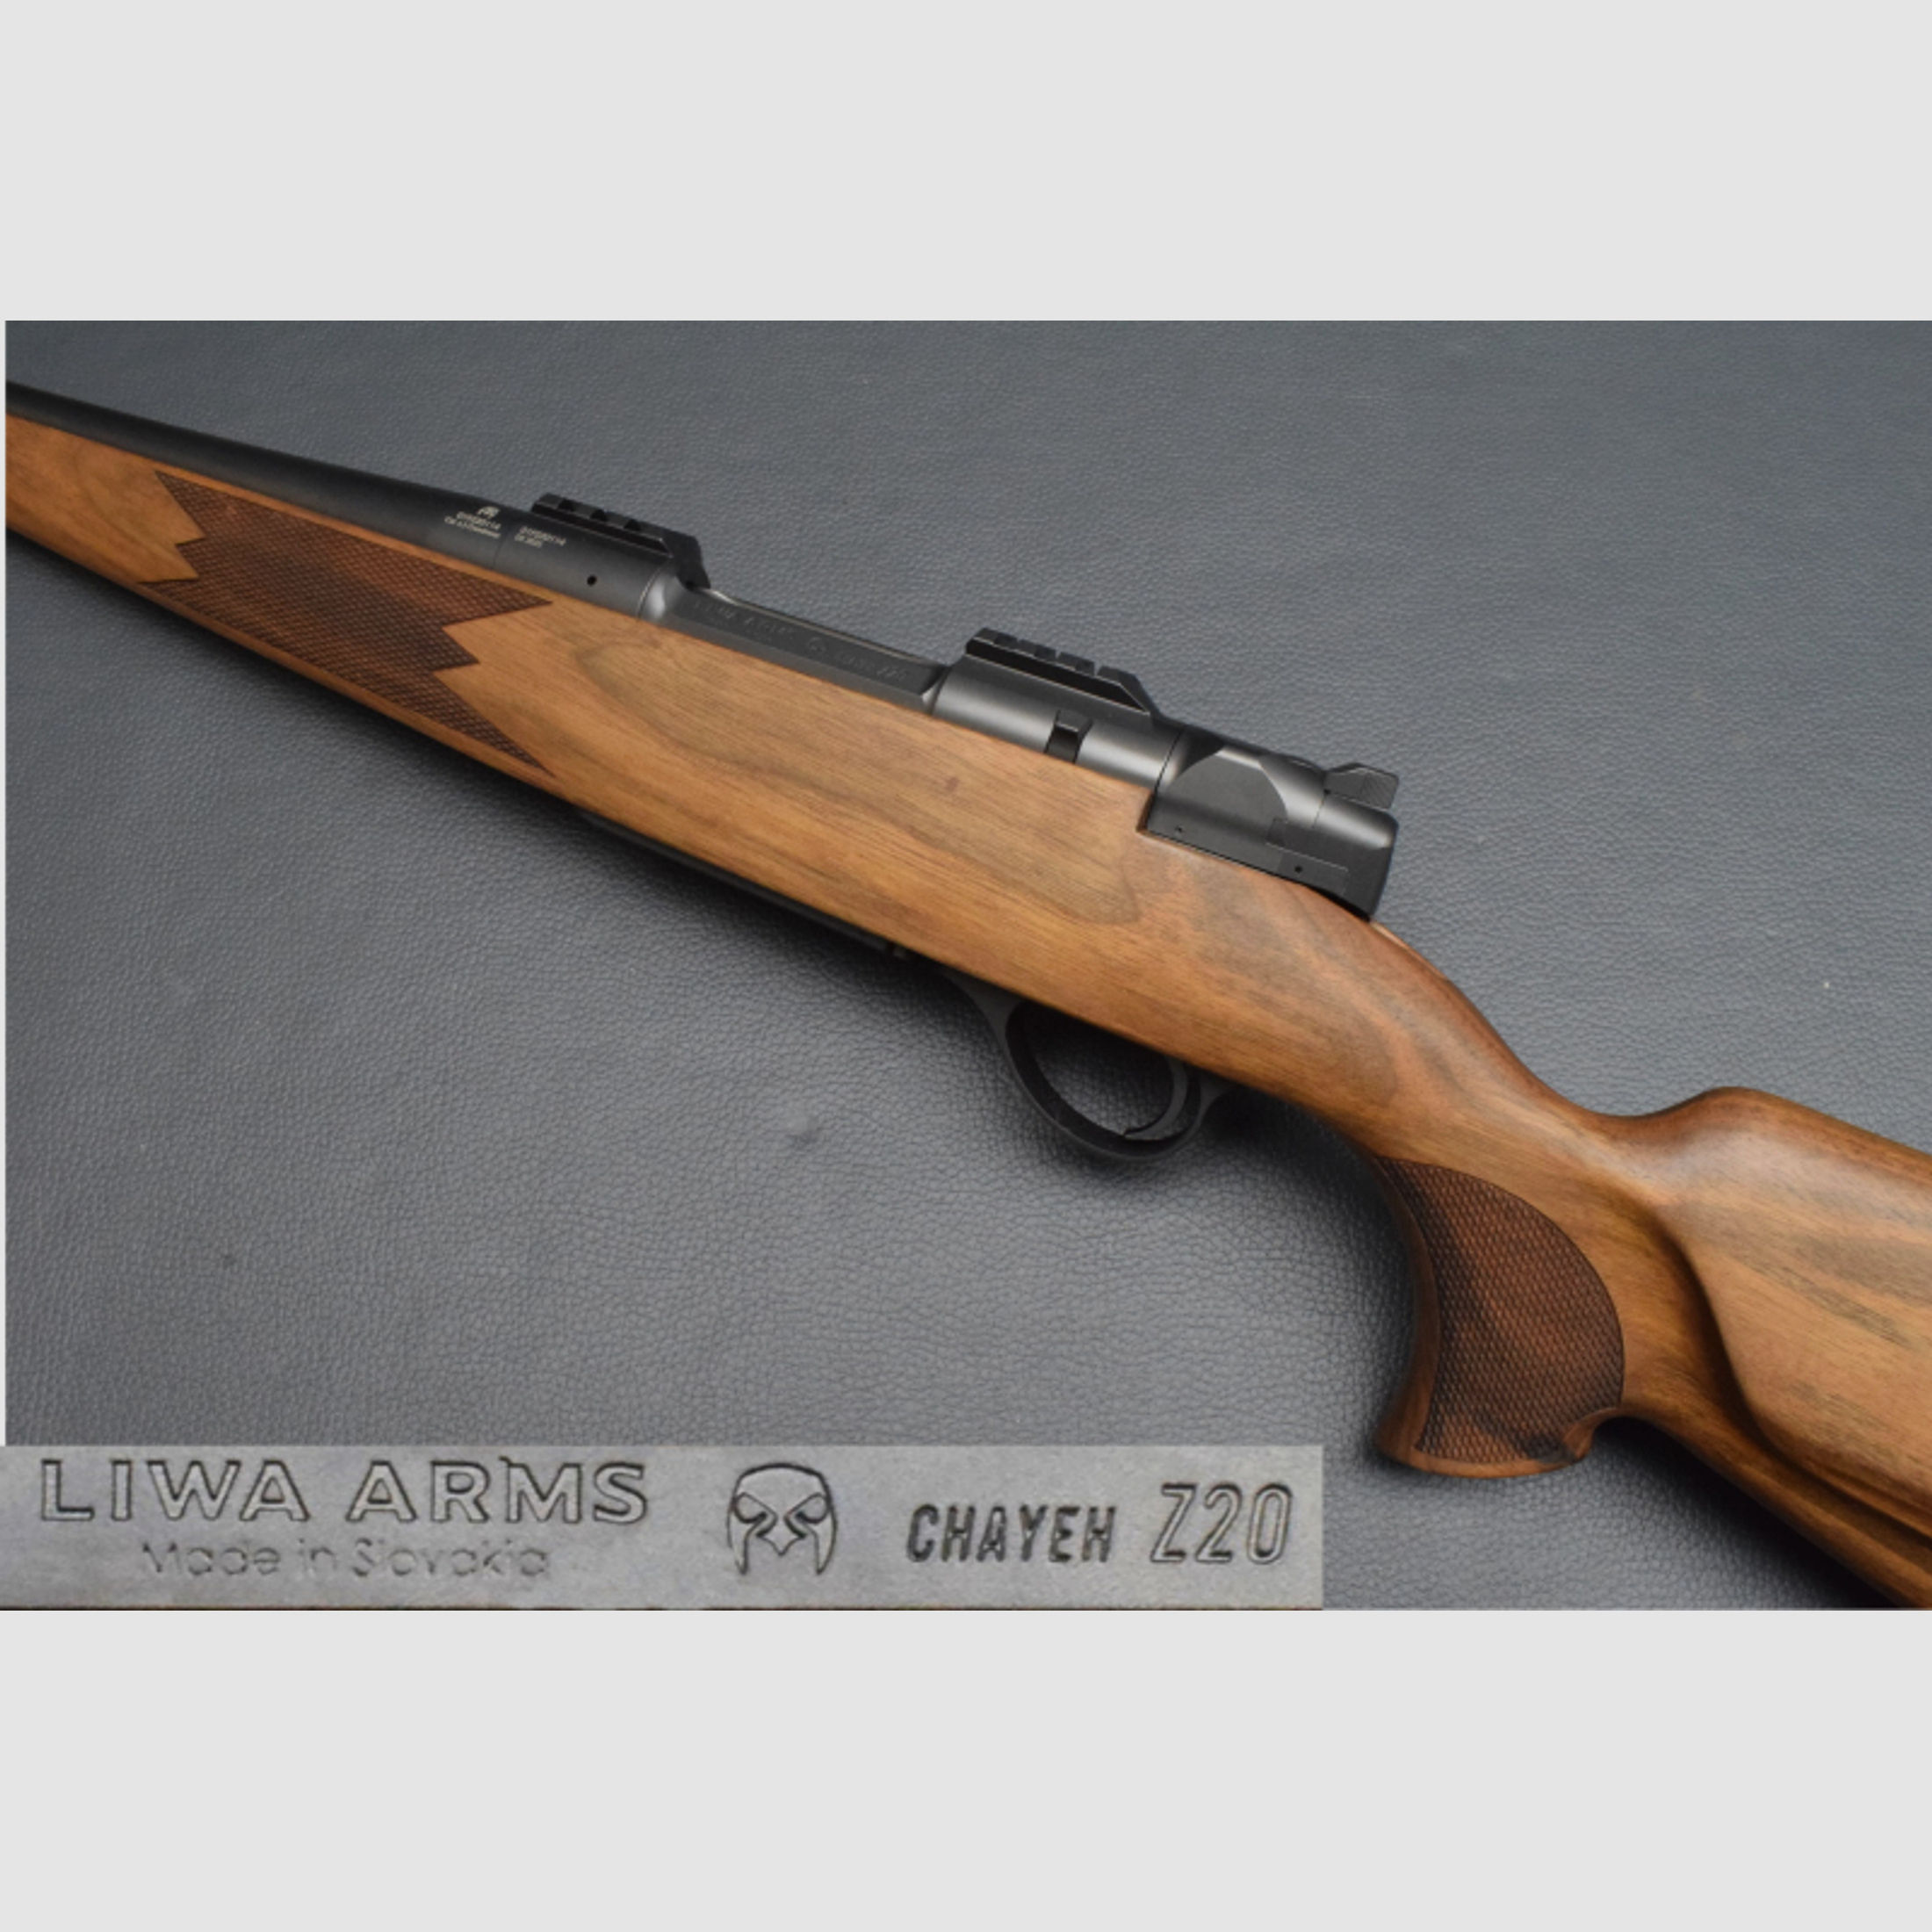 Liwa Arms Mod.Chayeh Z20, Kaliber 6,5 Creed. 47cm Kurzlauf mit M15x1, Geradezug, Neu zum Sonderpreis